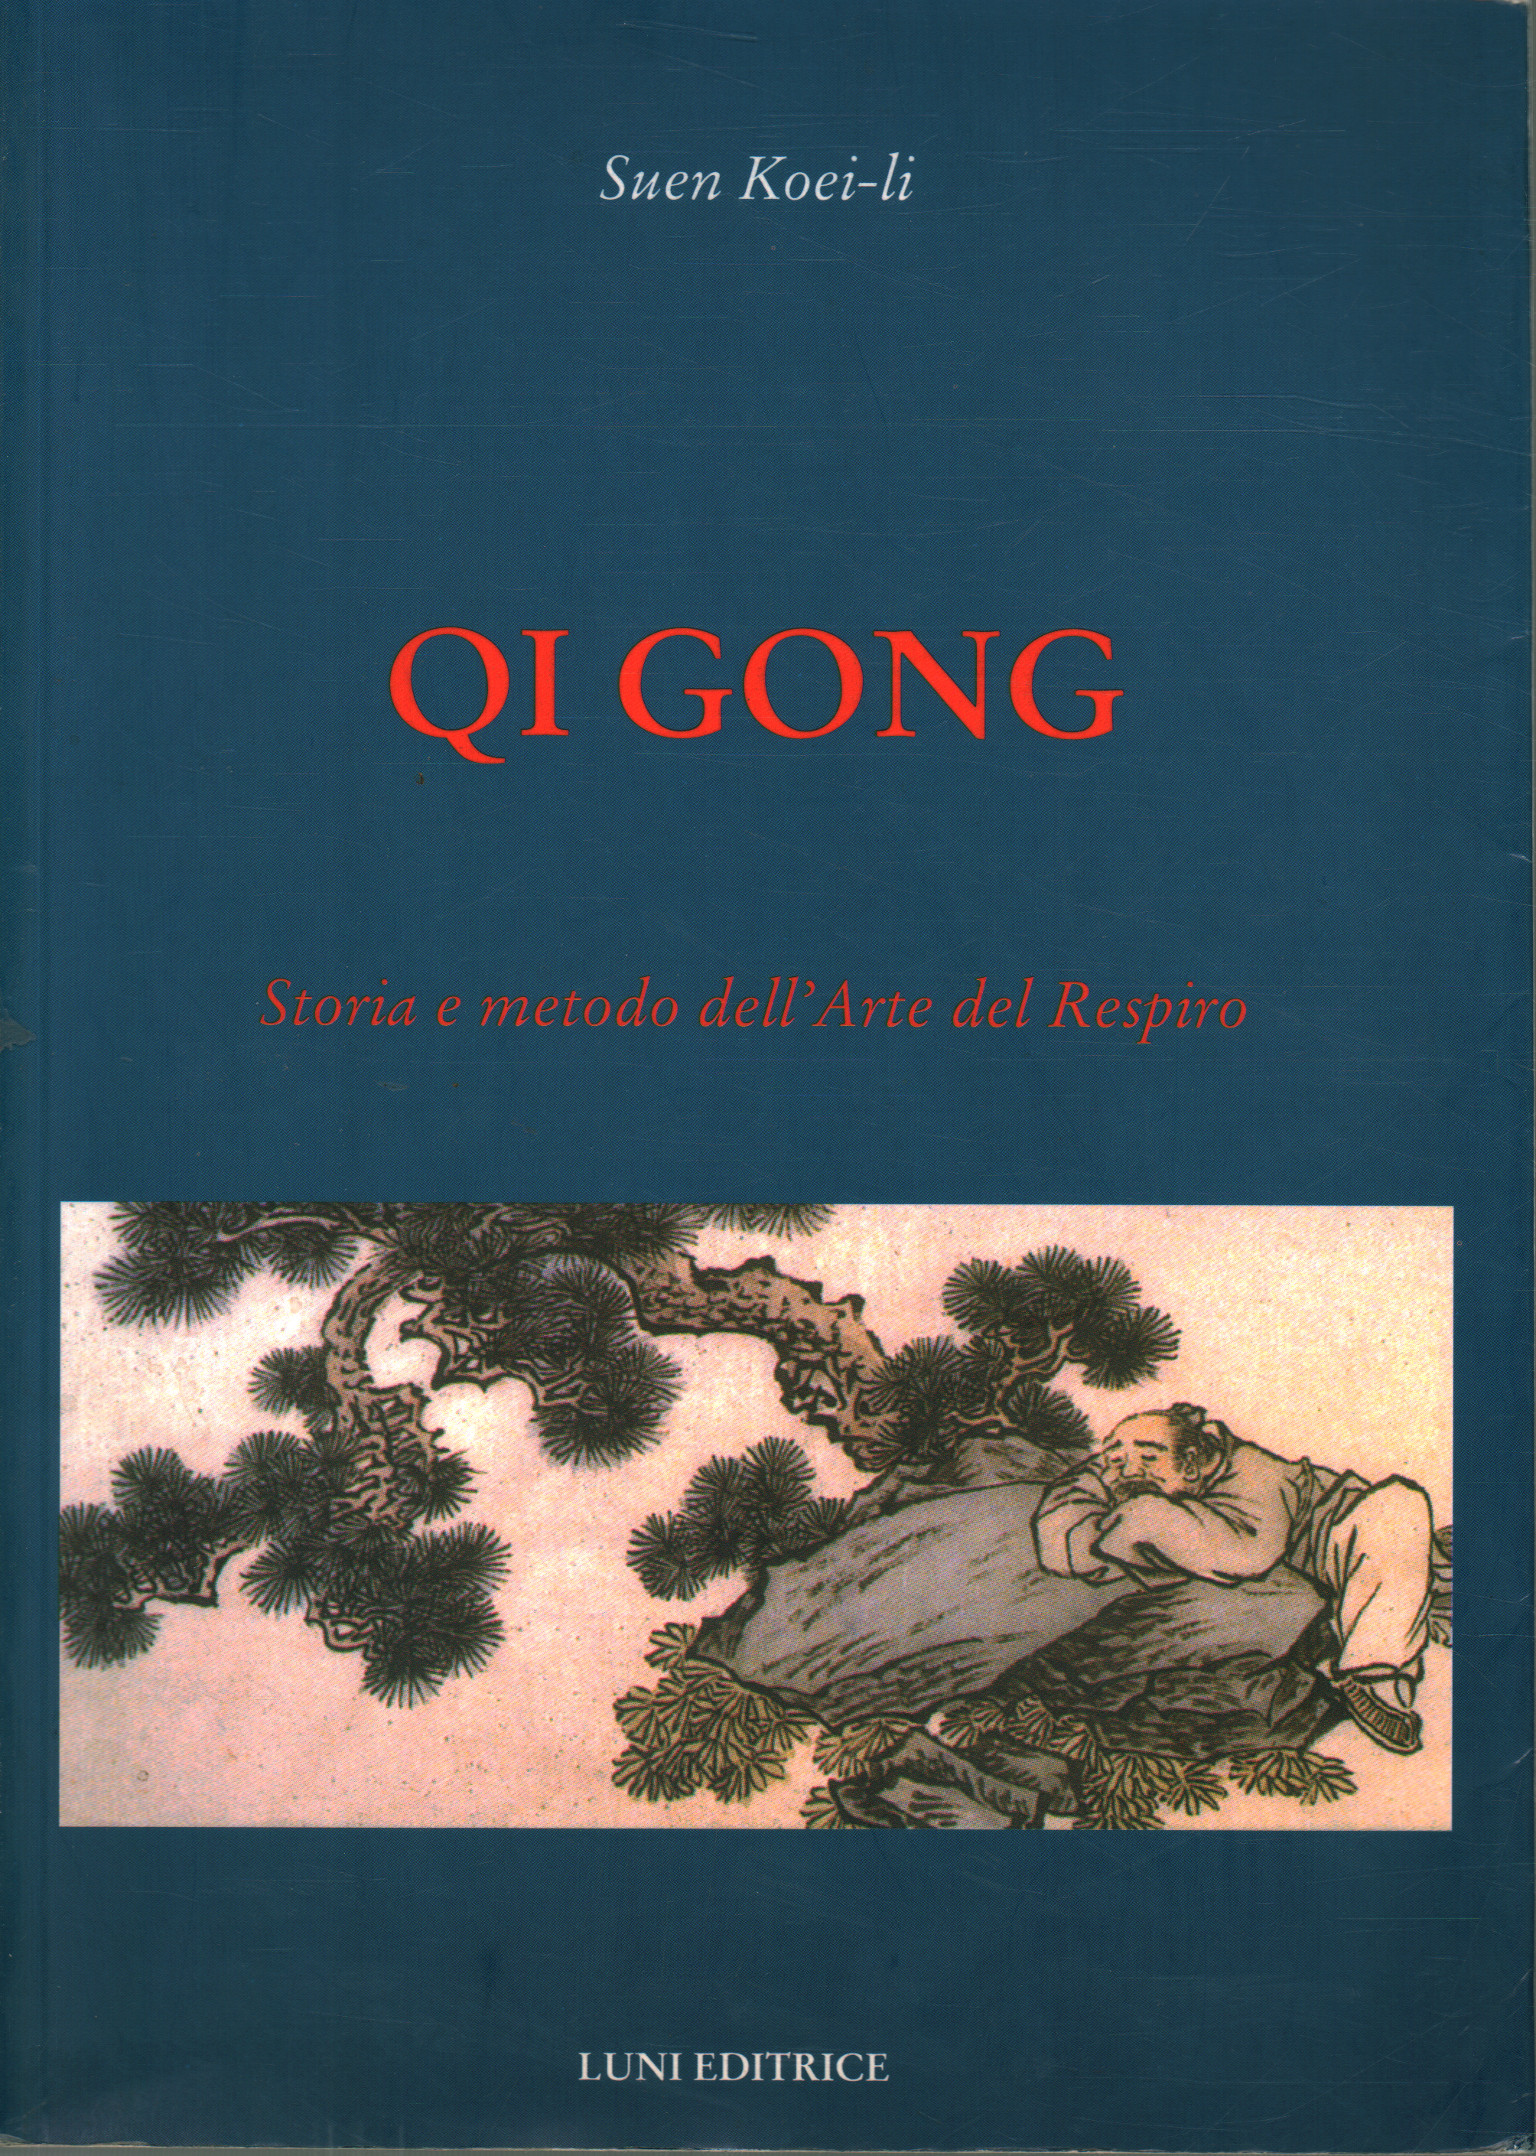 Qi Gong, Suen Koei-li